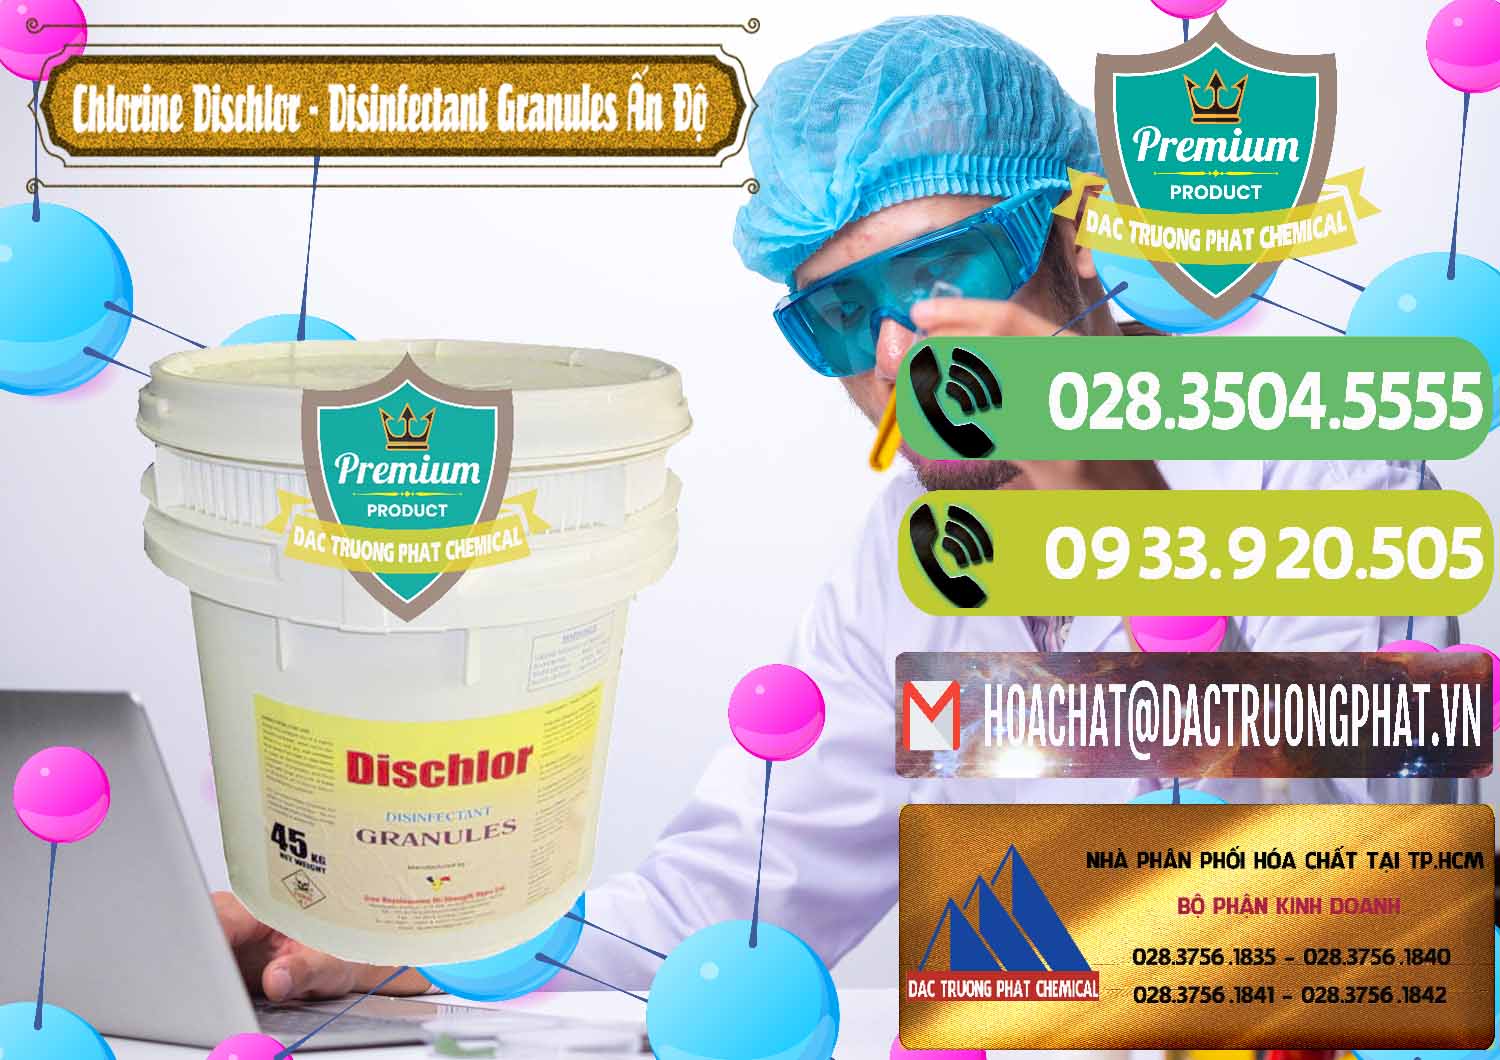 Chuyên bán _ cung ứng Chlorine – Clorin 70% Dischlor - Disinfectant Granules Ấn Độ India - 0248 - Phân phối _ cung ứng hóa chất tại TP.HCM - hoachatmientay.vn